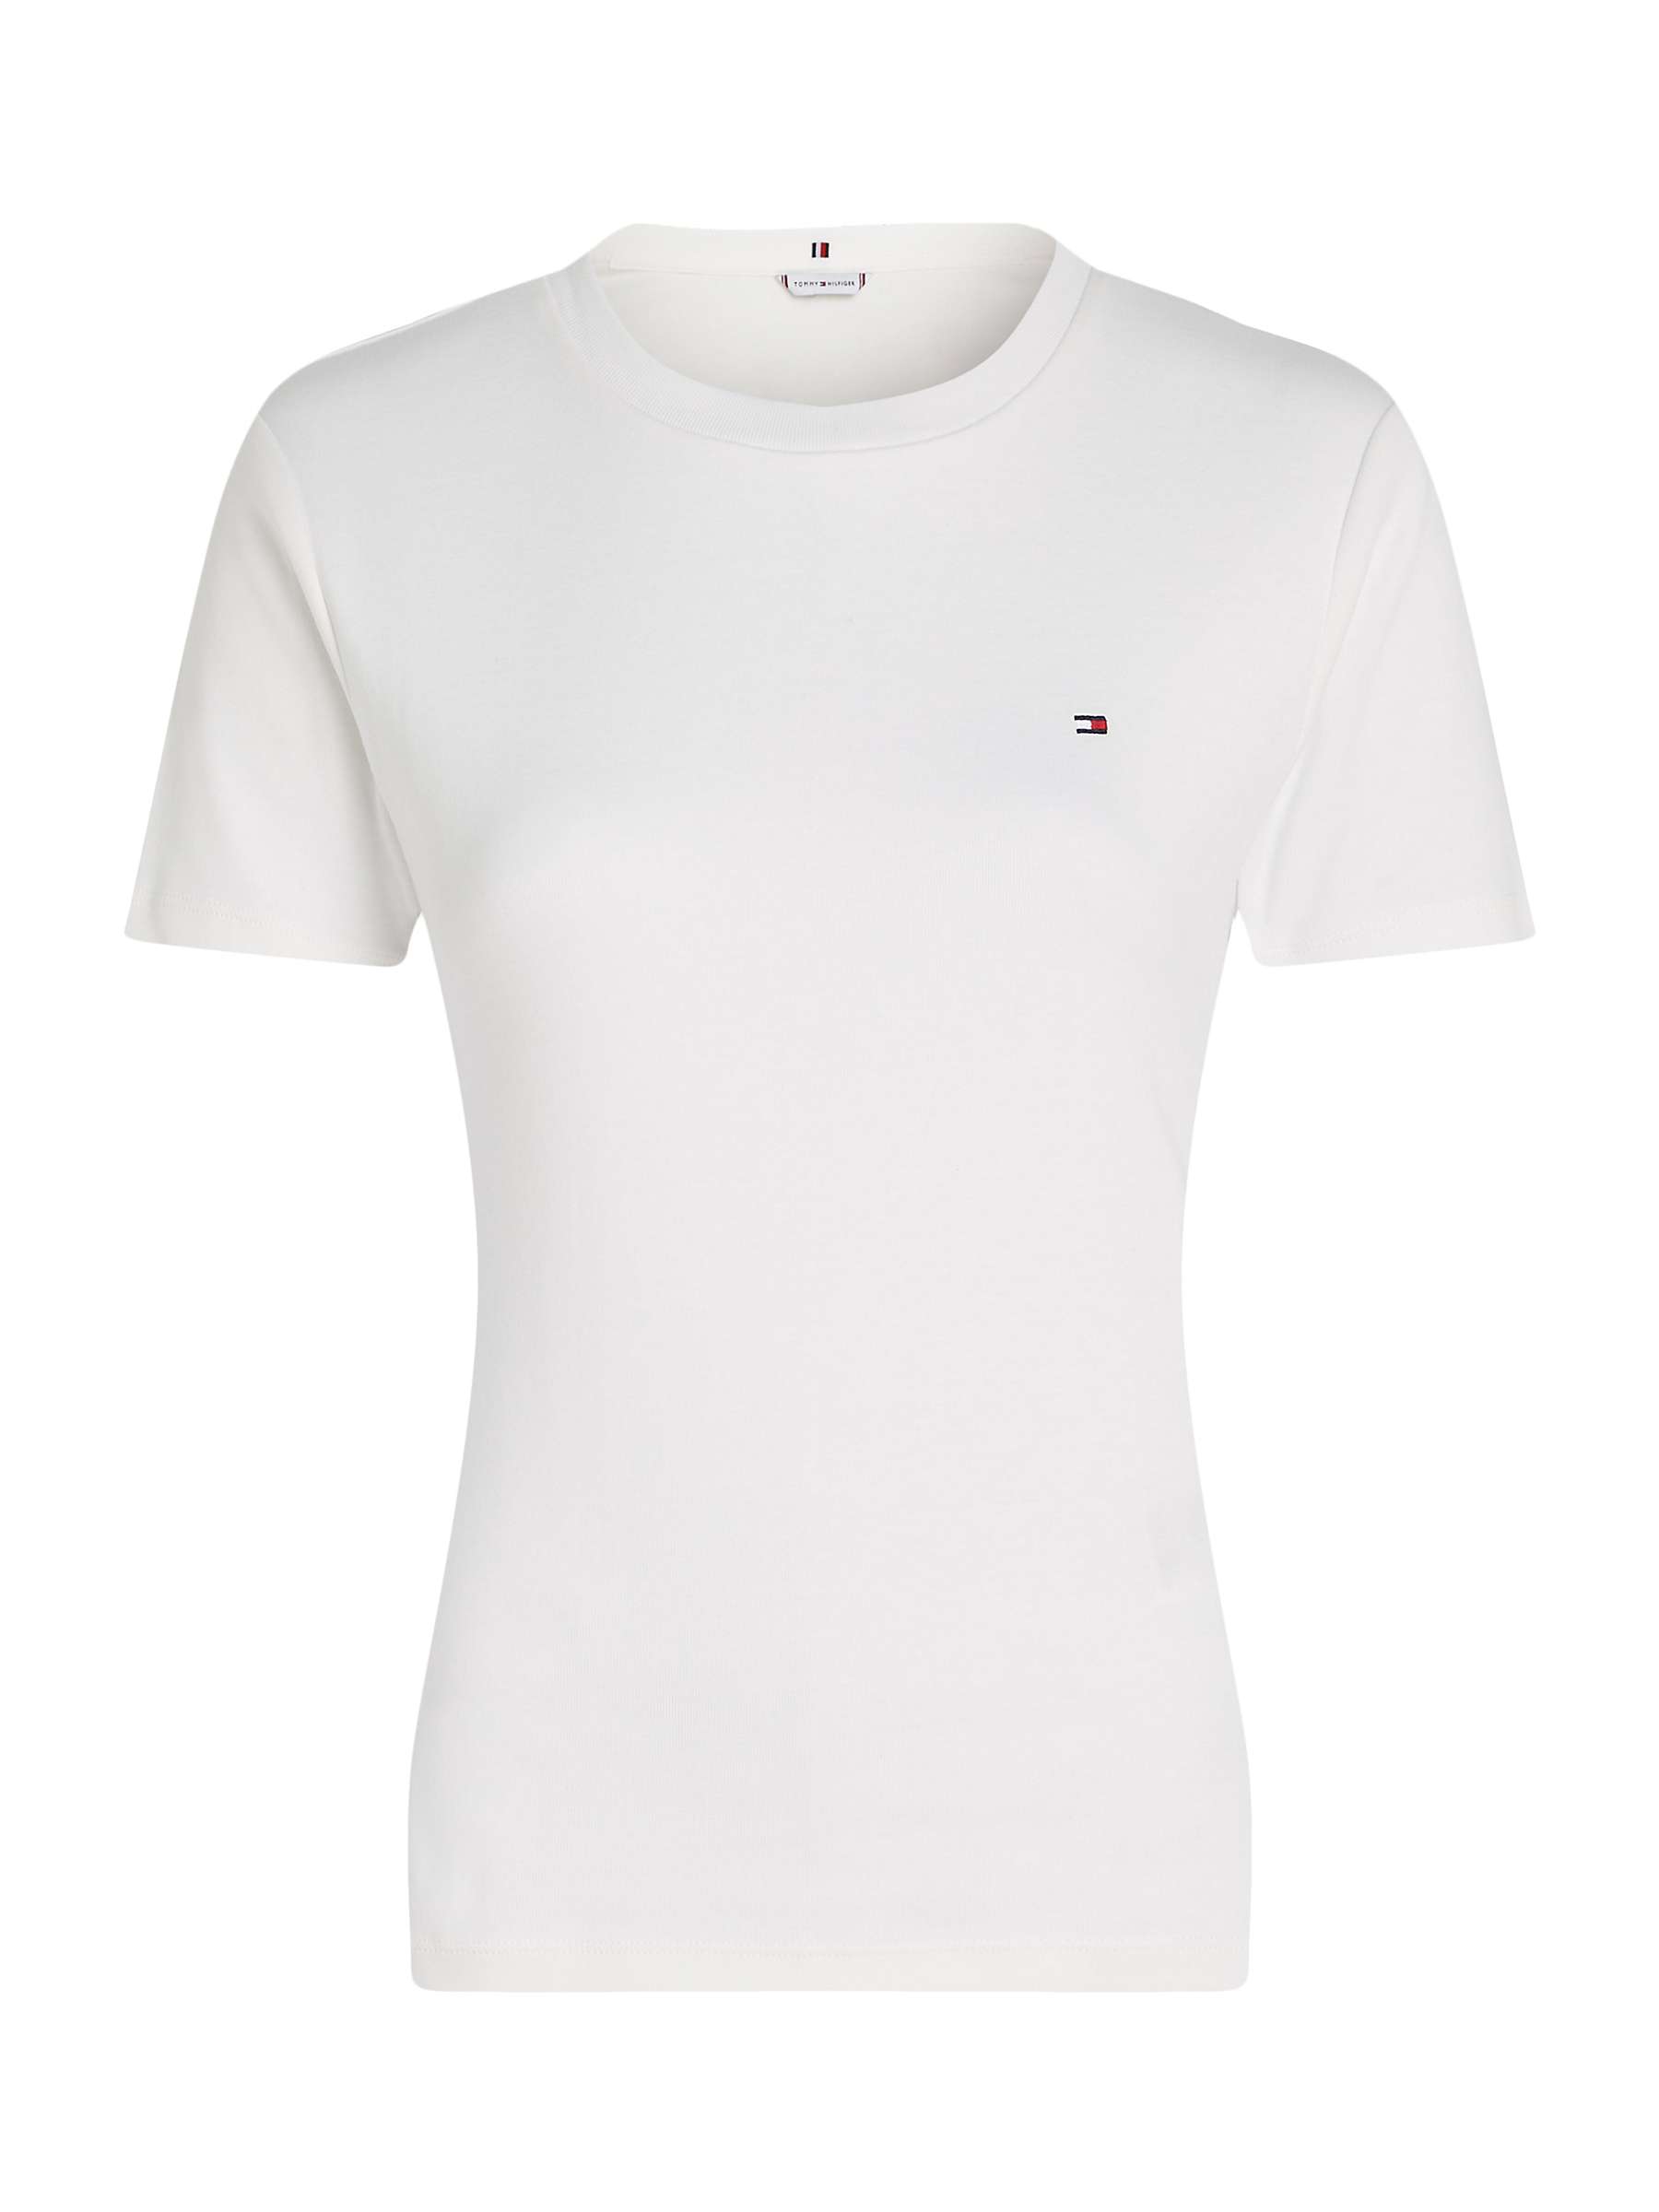 Buy Tommy Hilfiger Short Sleeve T-Shirt, Ecru Online at johnlewis.com